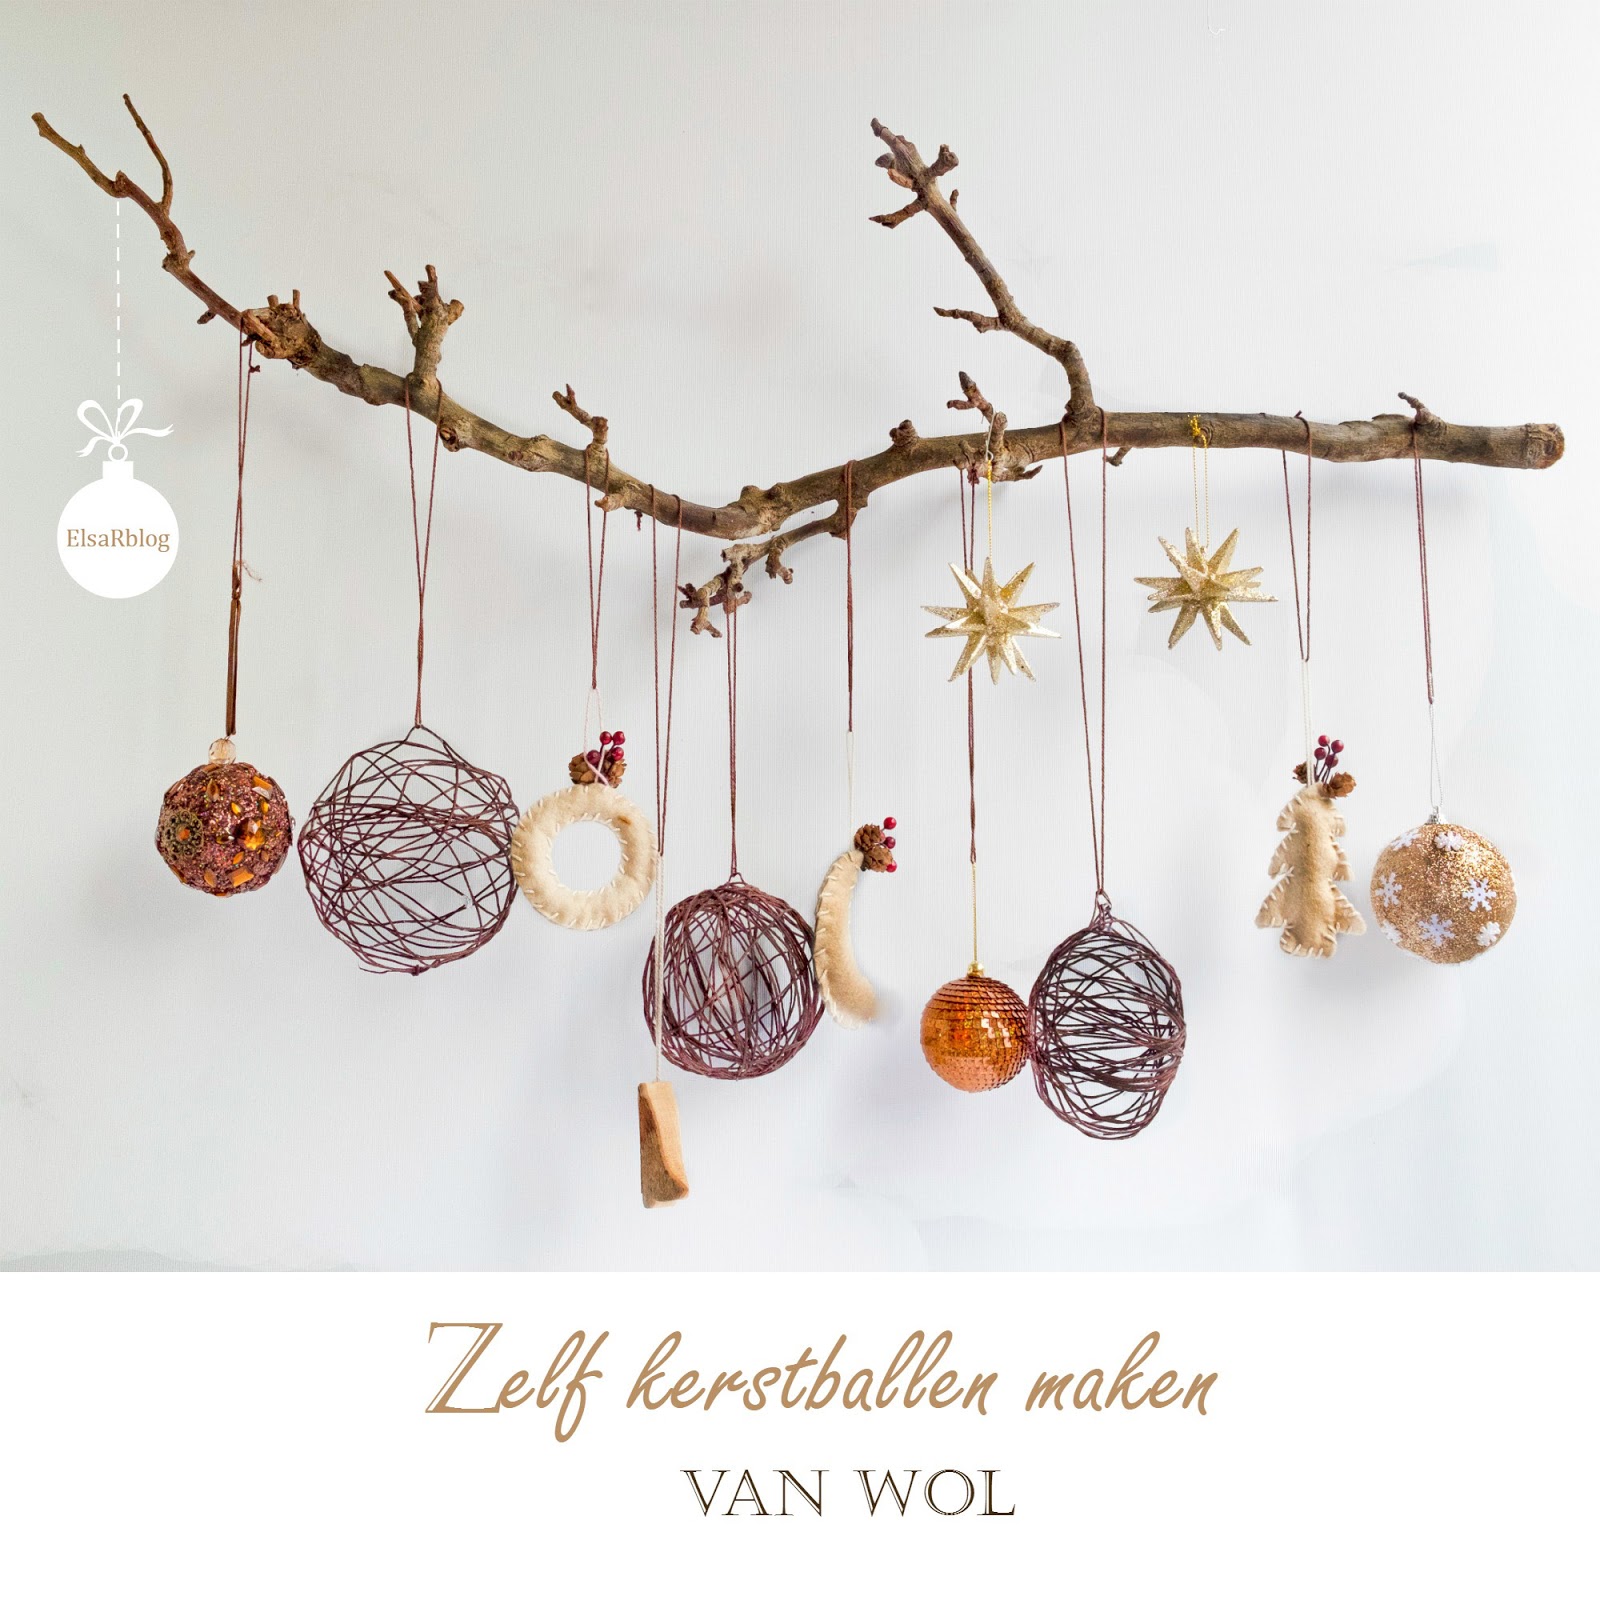 long Compliment Hijgend Zelf kerstballen maken van wol - Diy – ElsaRblog